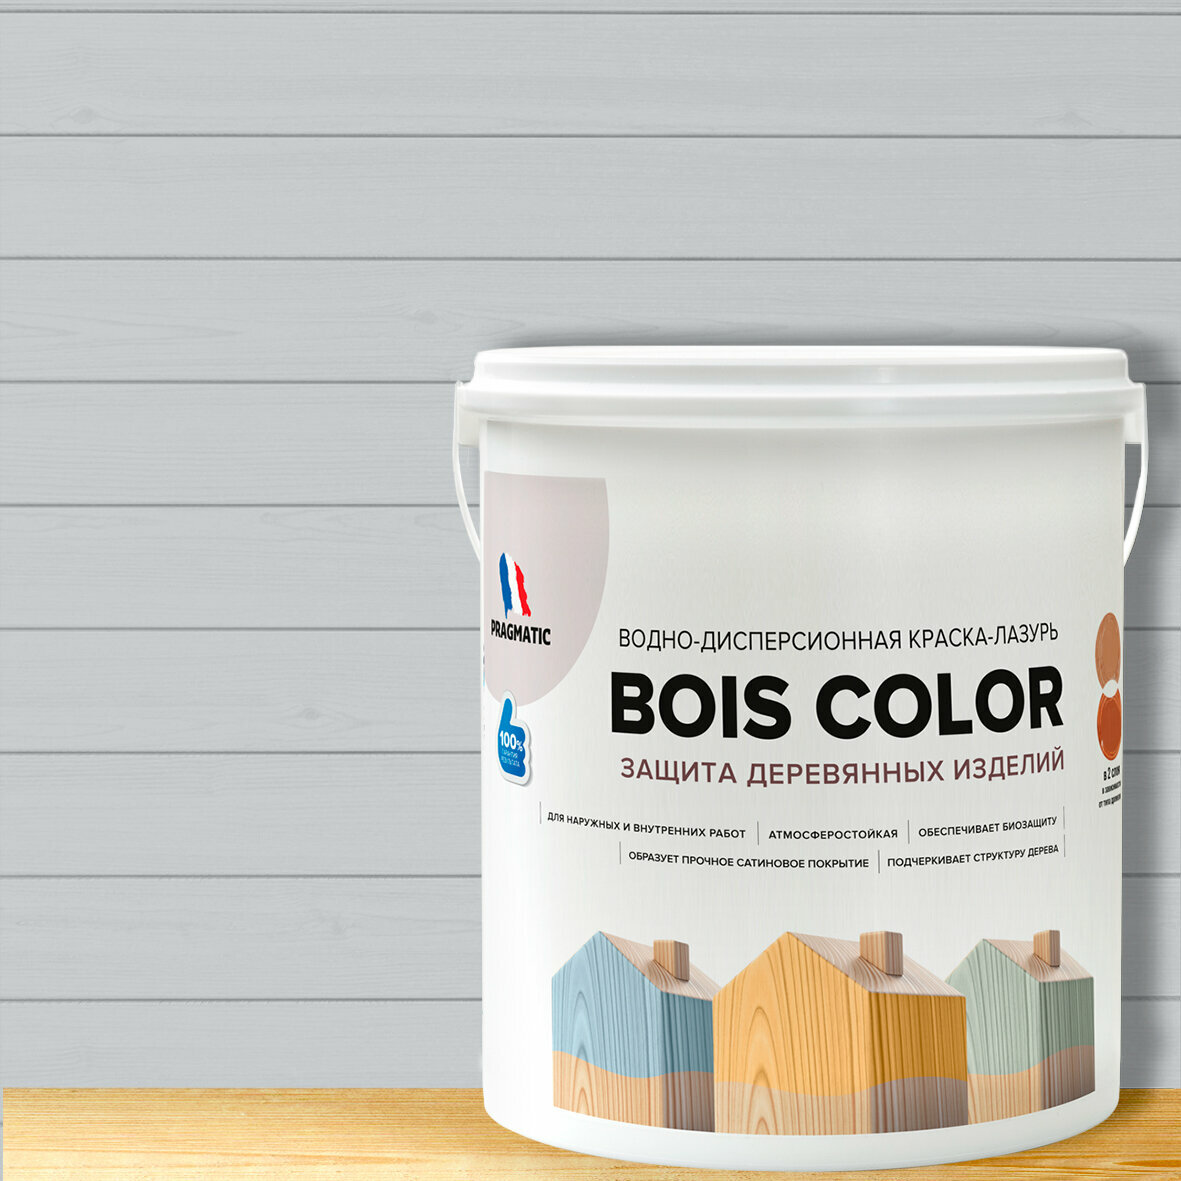 Краска (лазурь) для деревянных поверхностей и фасадов, обеспечивает биозащиту, защищает от плесени, грибков, атмосферостойкая, водоотталкивающая BOIS COLOR 0,9 л цвет Светло серый 8258